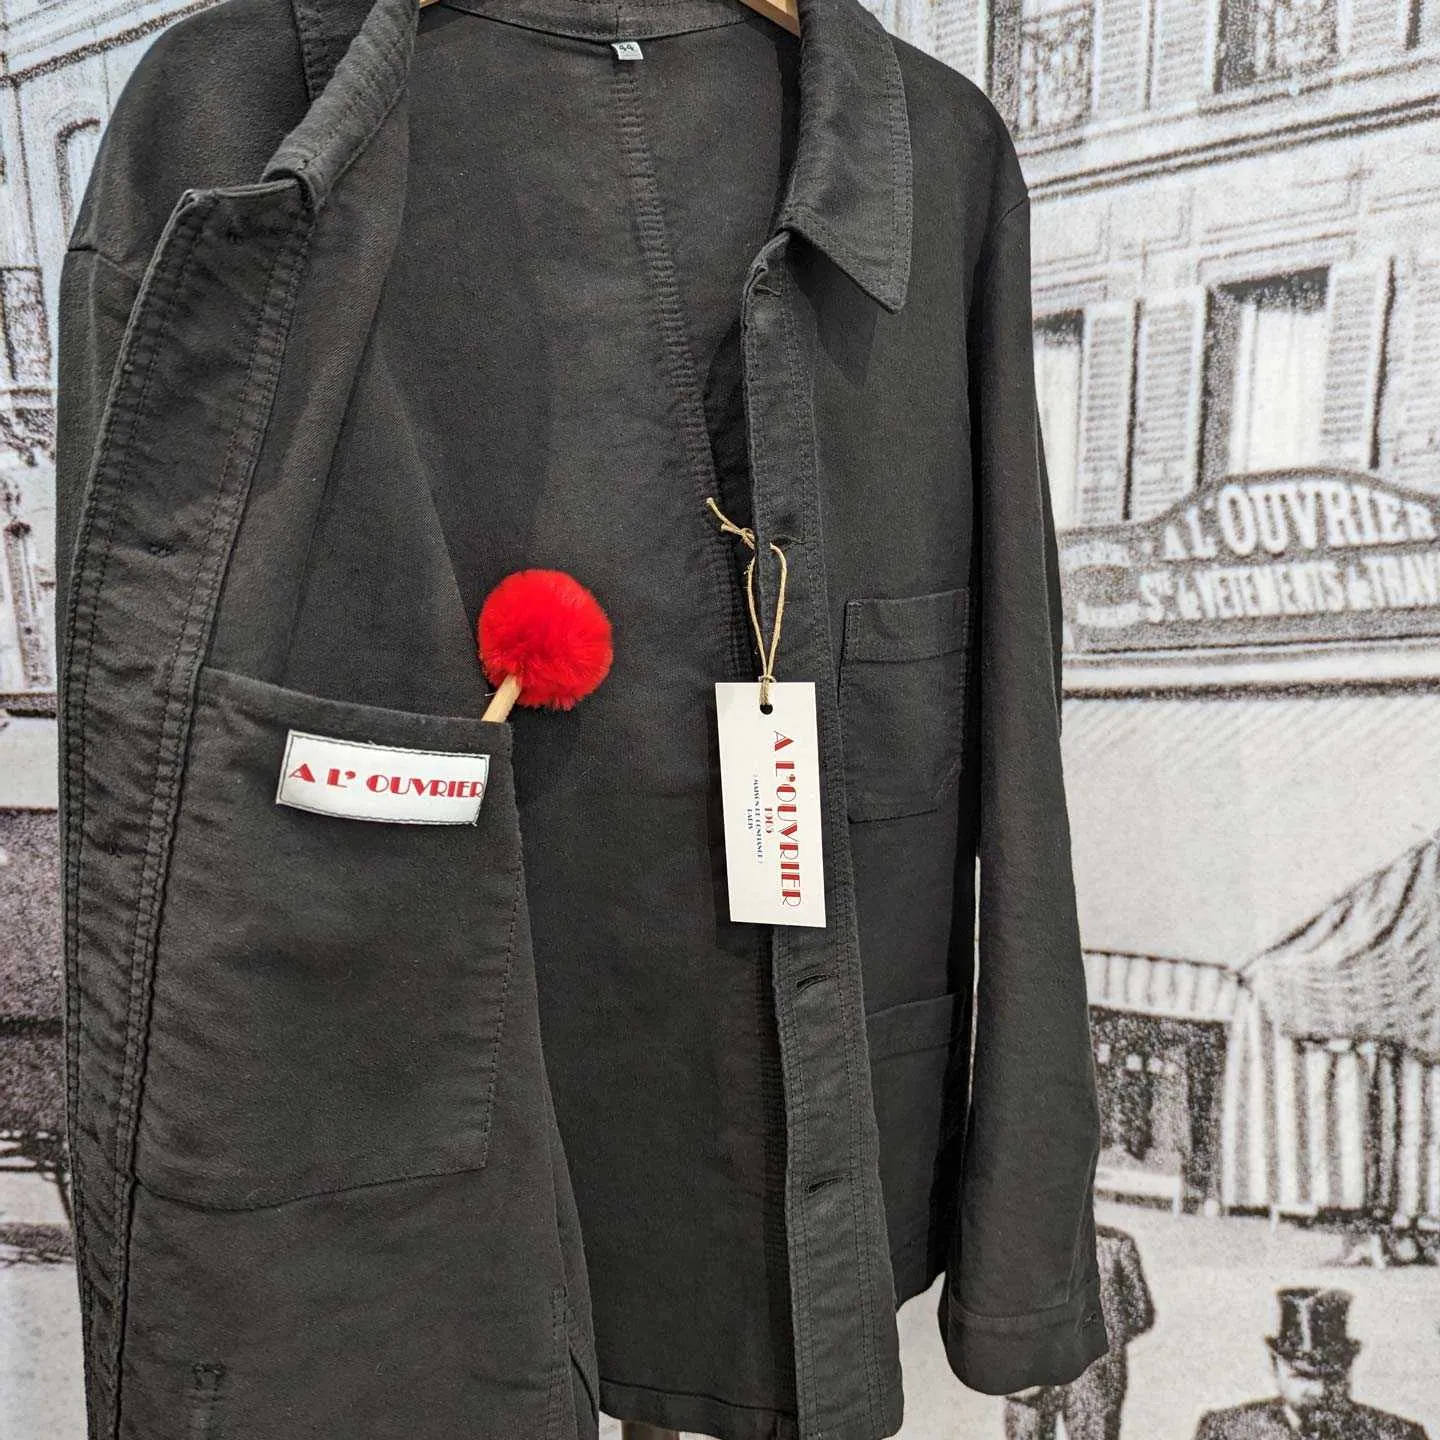 Ancestral moleskin work jacket A L'Ouvrier Coltin made in France